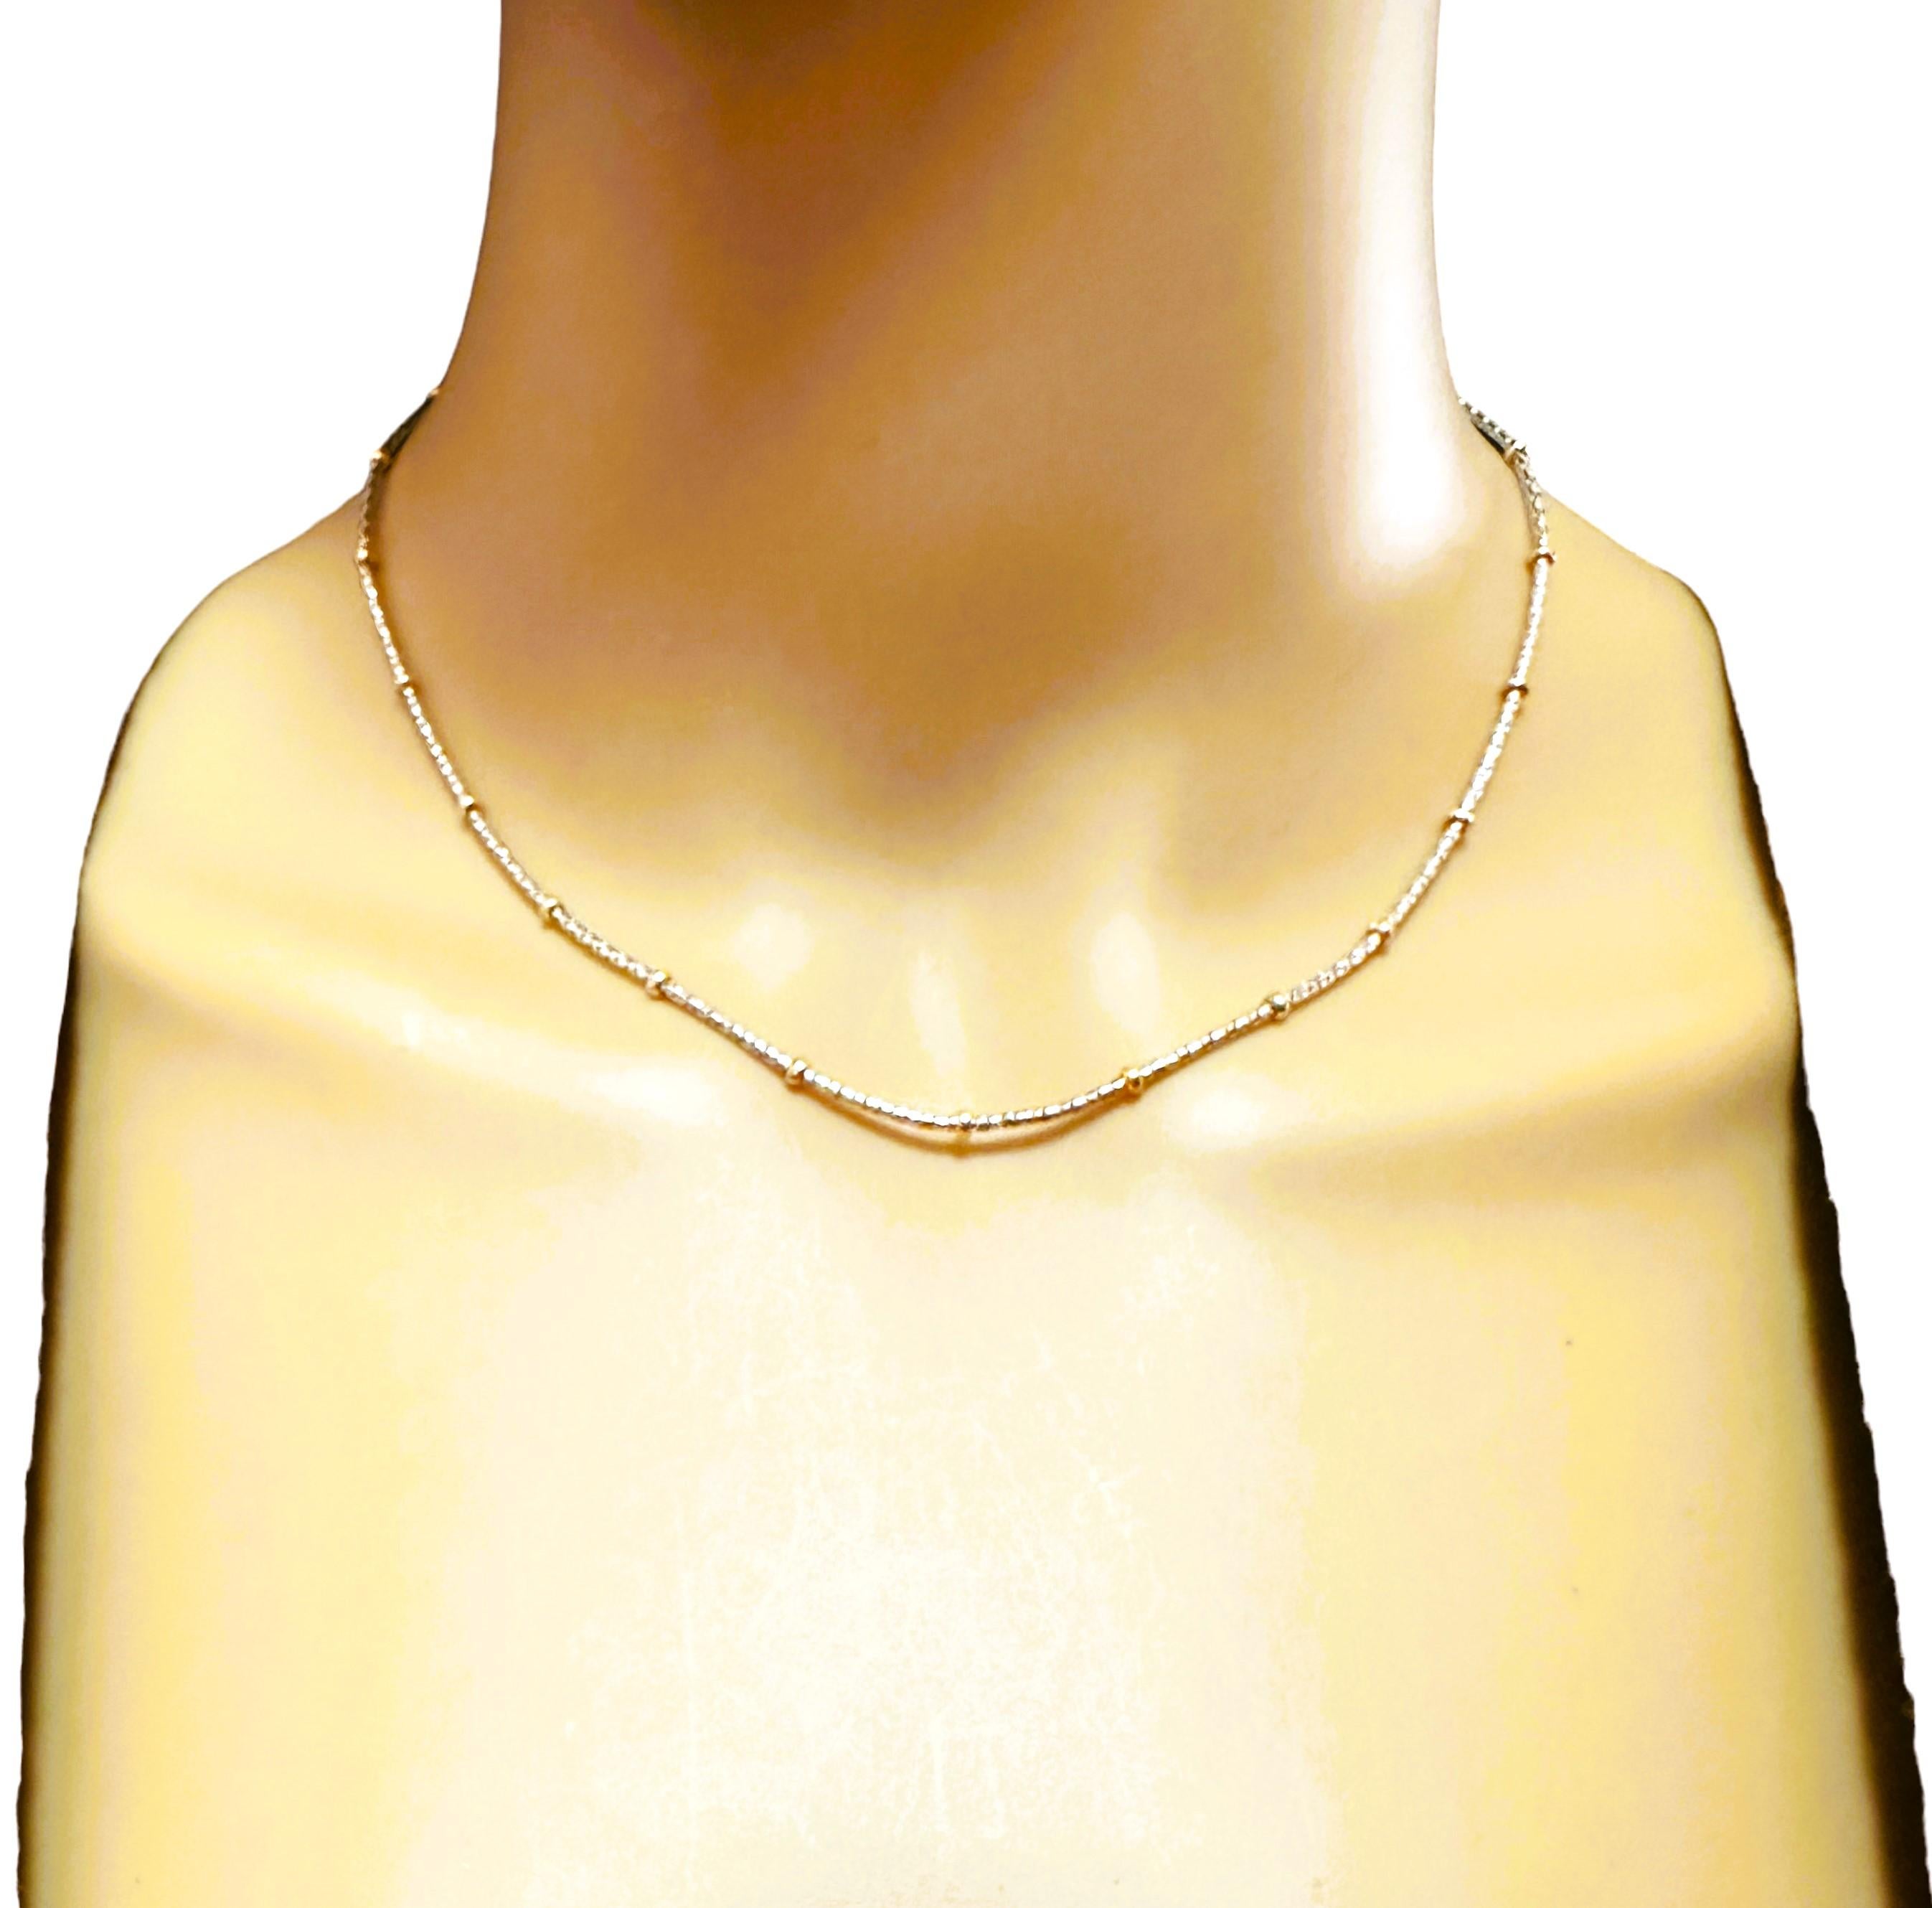 Diese Halskette ist einfach sehr gut gemacht.  Es ist eine solche Qualität gemacht Stück von der Kitsinian Jewelers gemacht.  Es ist ein 14K Weißgold Laser Kette mit stationären 14k Gelbgold Perlen.  Die zwei Farben machen es sehr vielseitig.  Sie